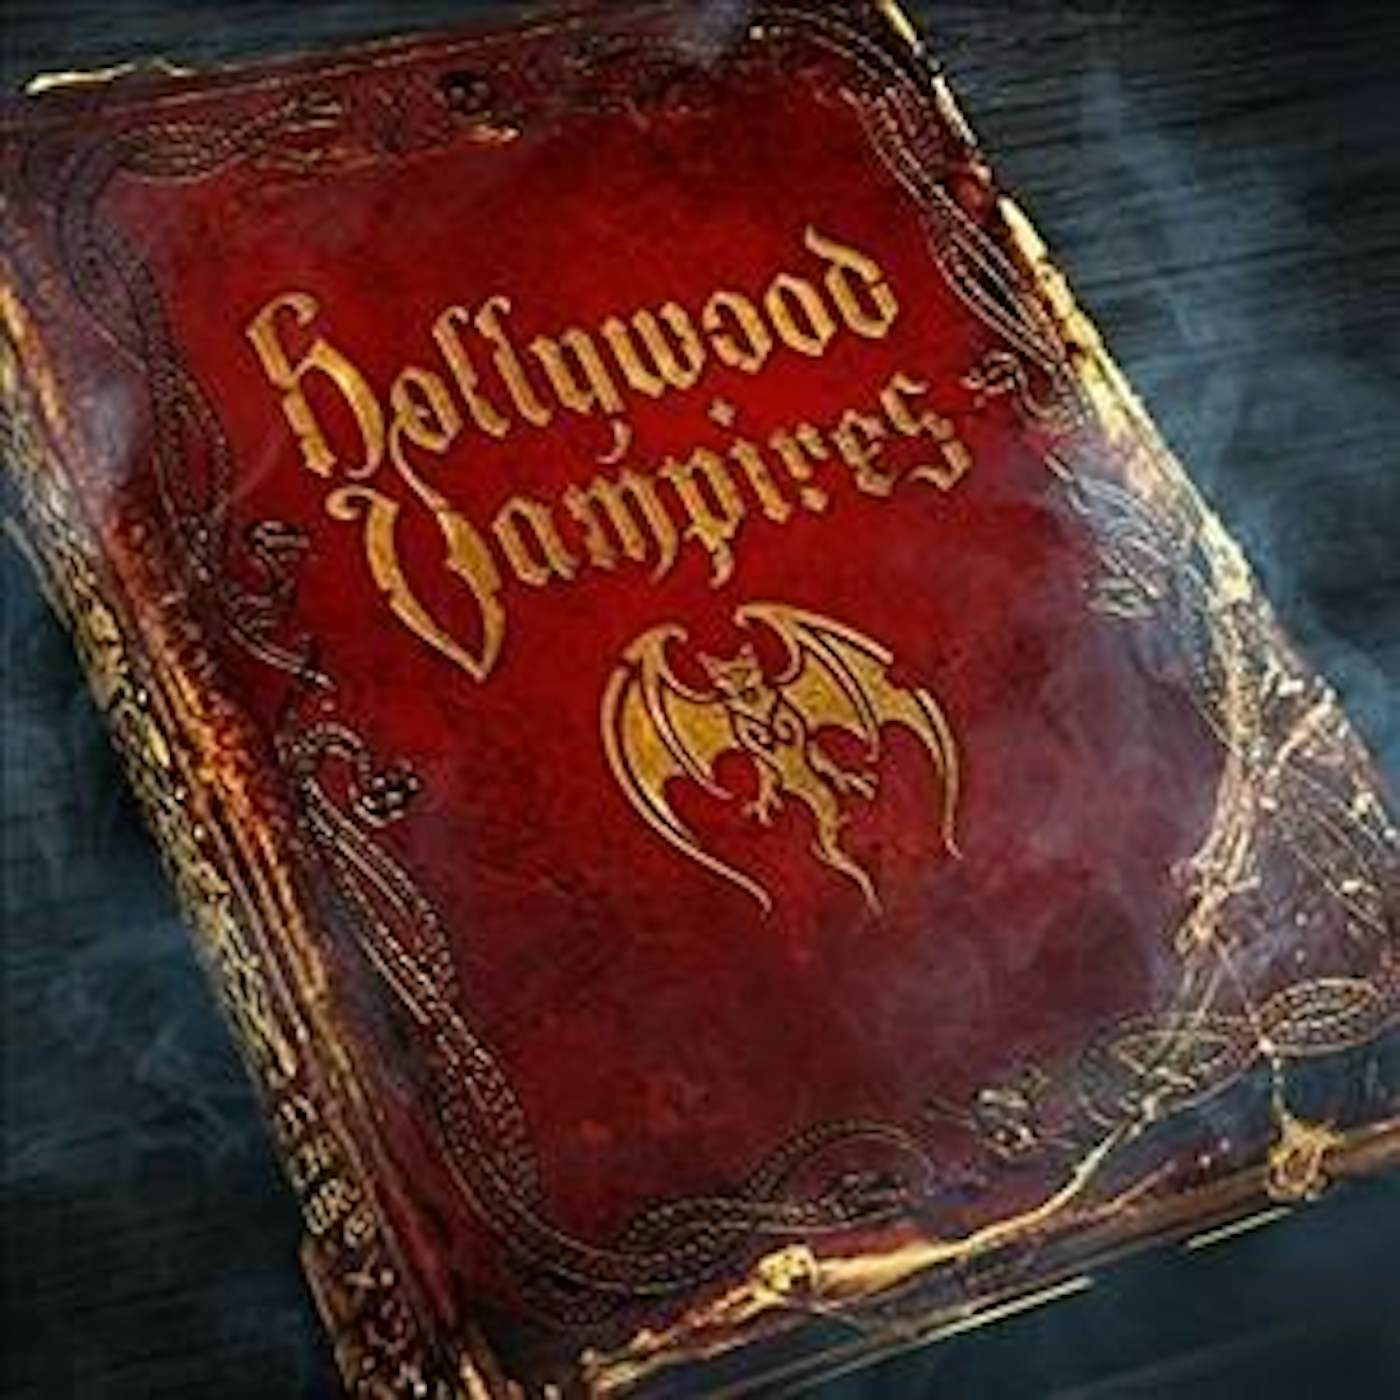 HOLLYWOOD VAMPIRES Vinyl Record